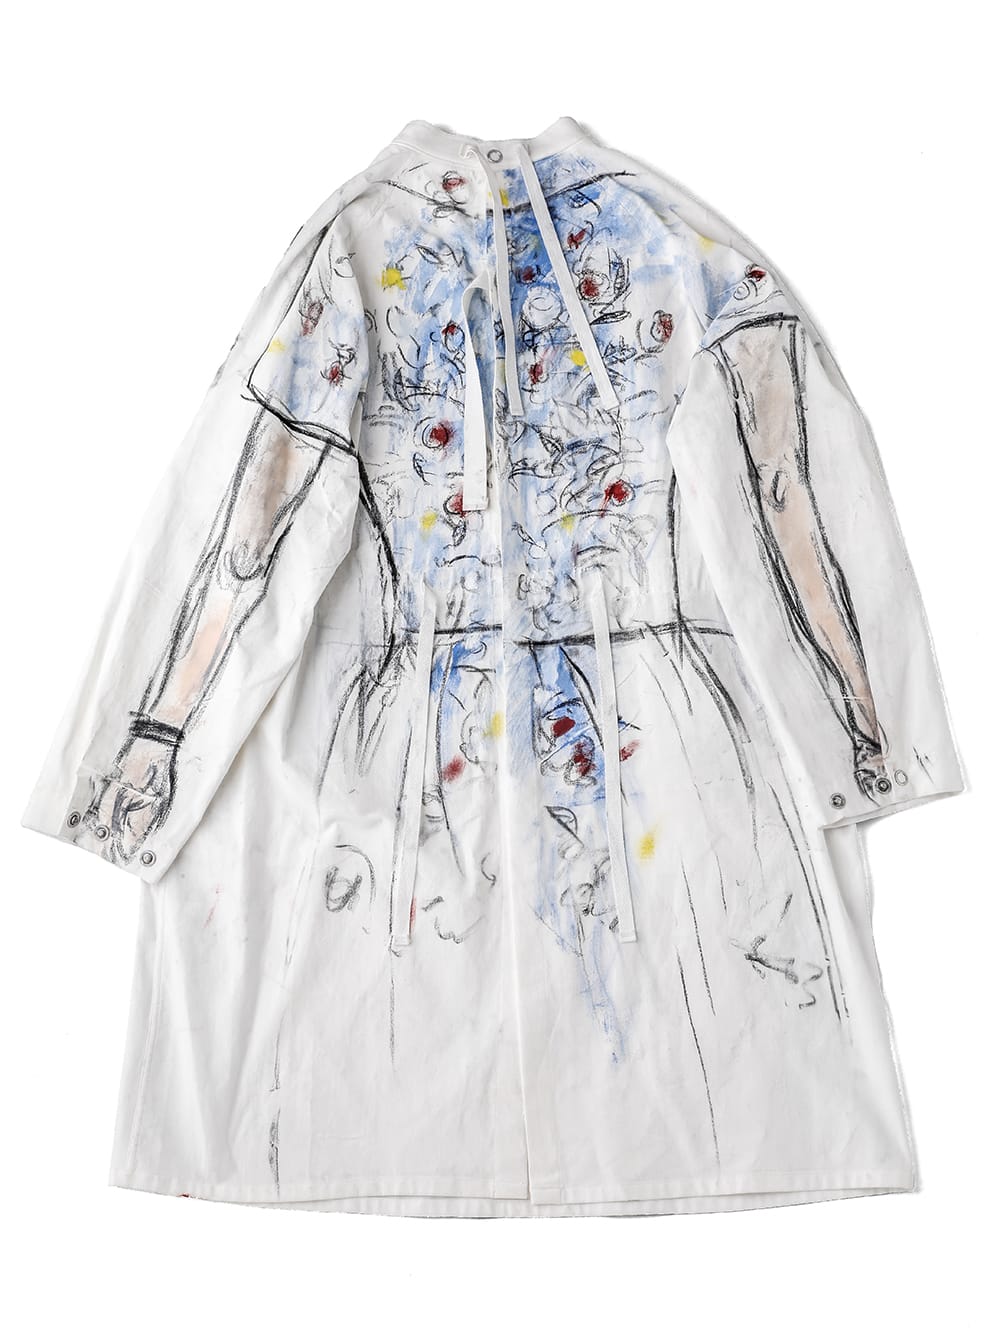 medical gown shirt.(Trompe-l'œil paint type 1)